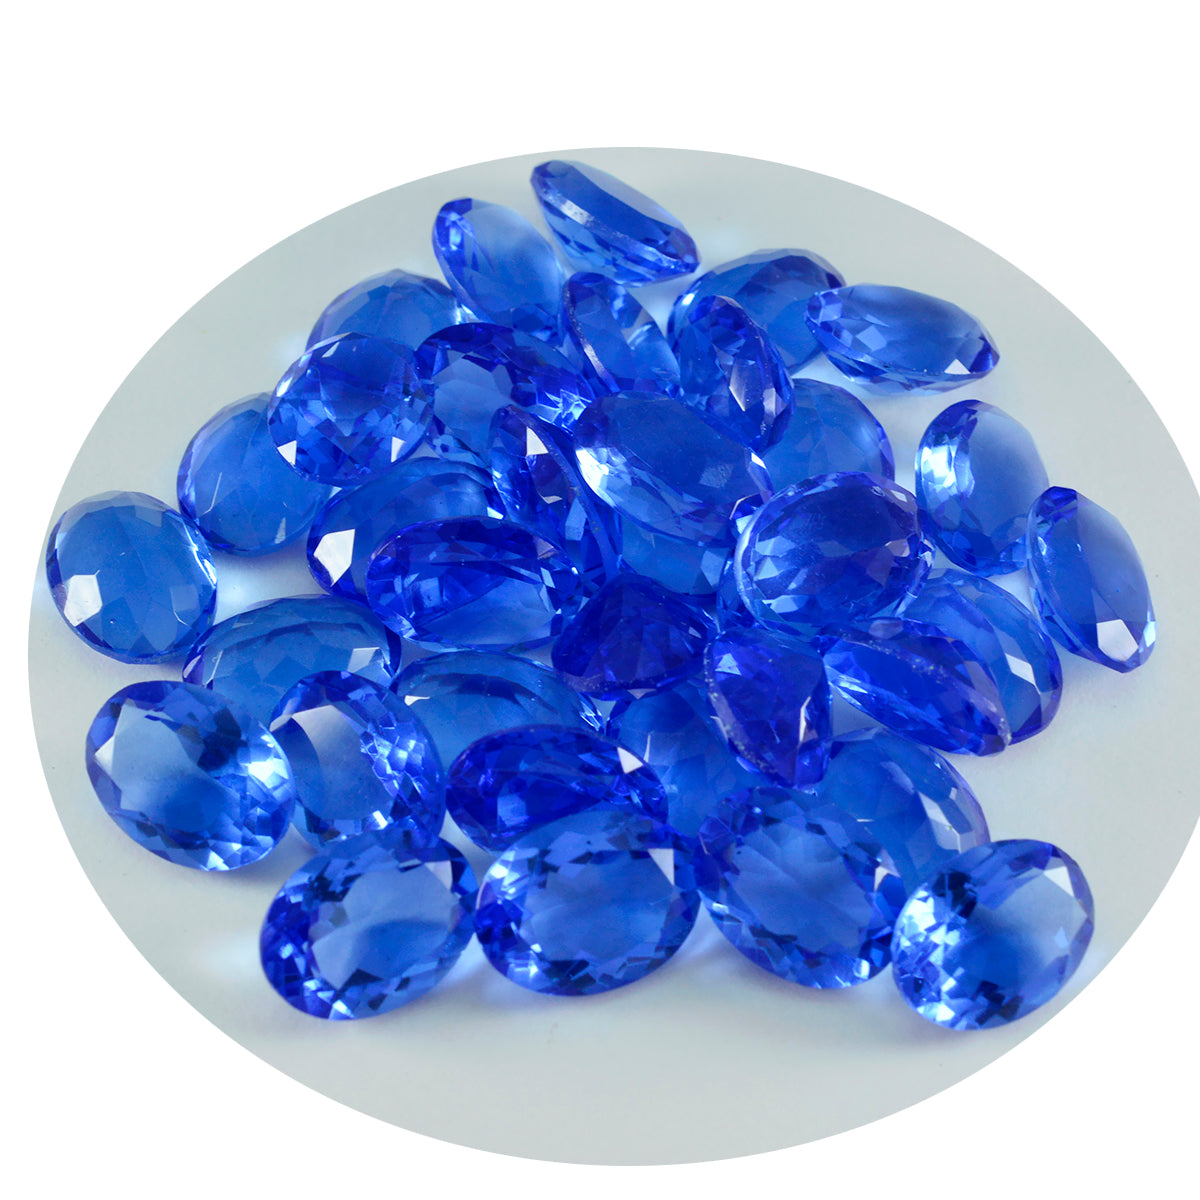 riyogems 1 шт. синий сапфир cz ограненный 9x11 мм драгоценный камень овальной формы хорошего качества